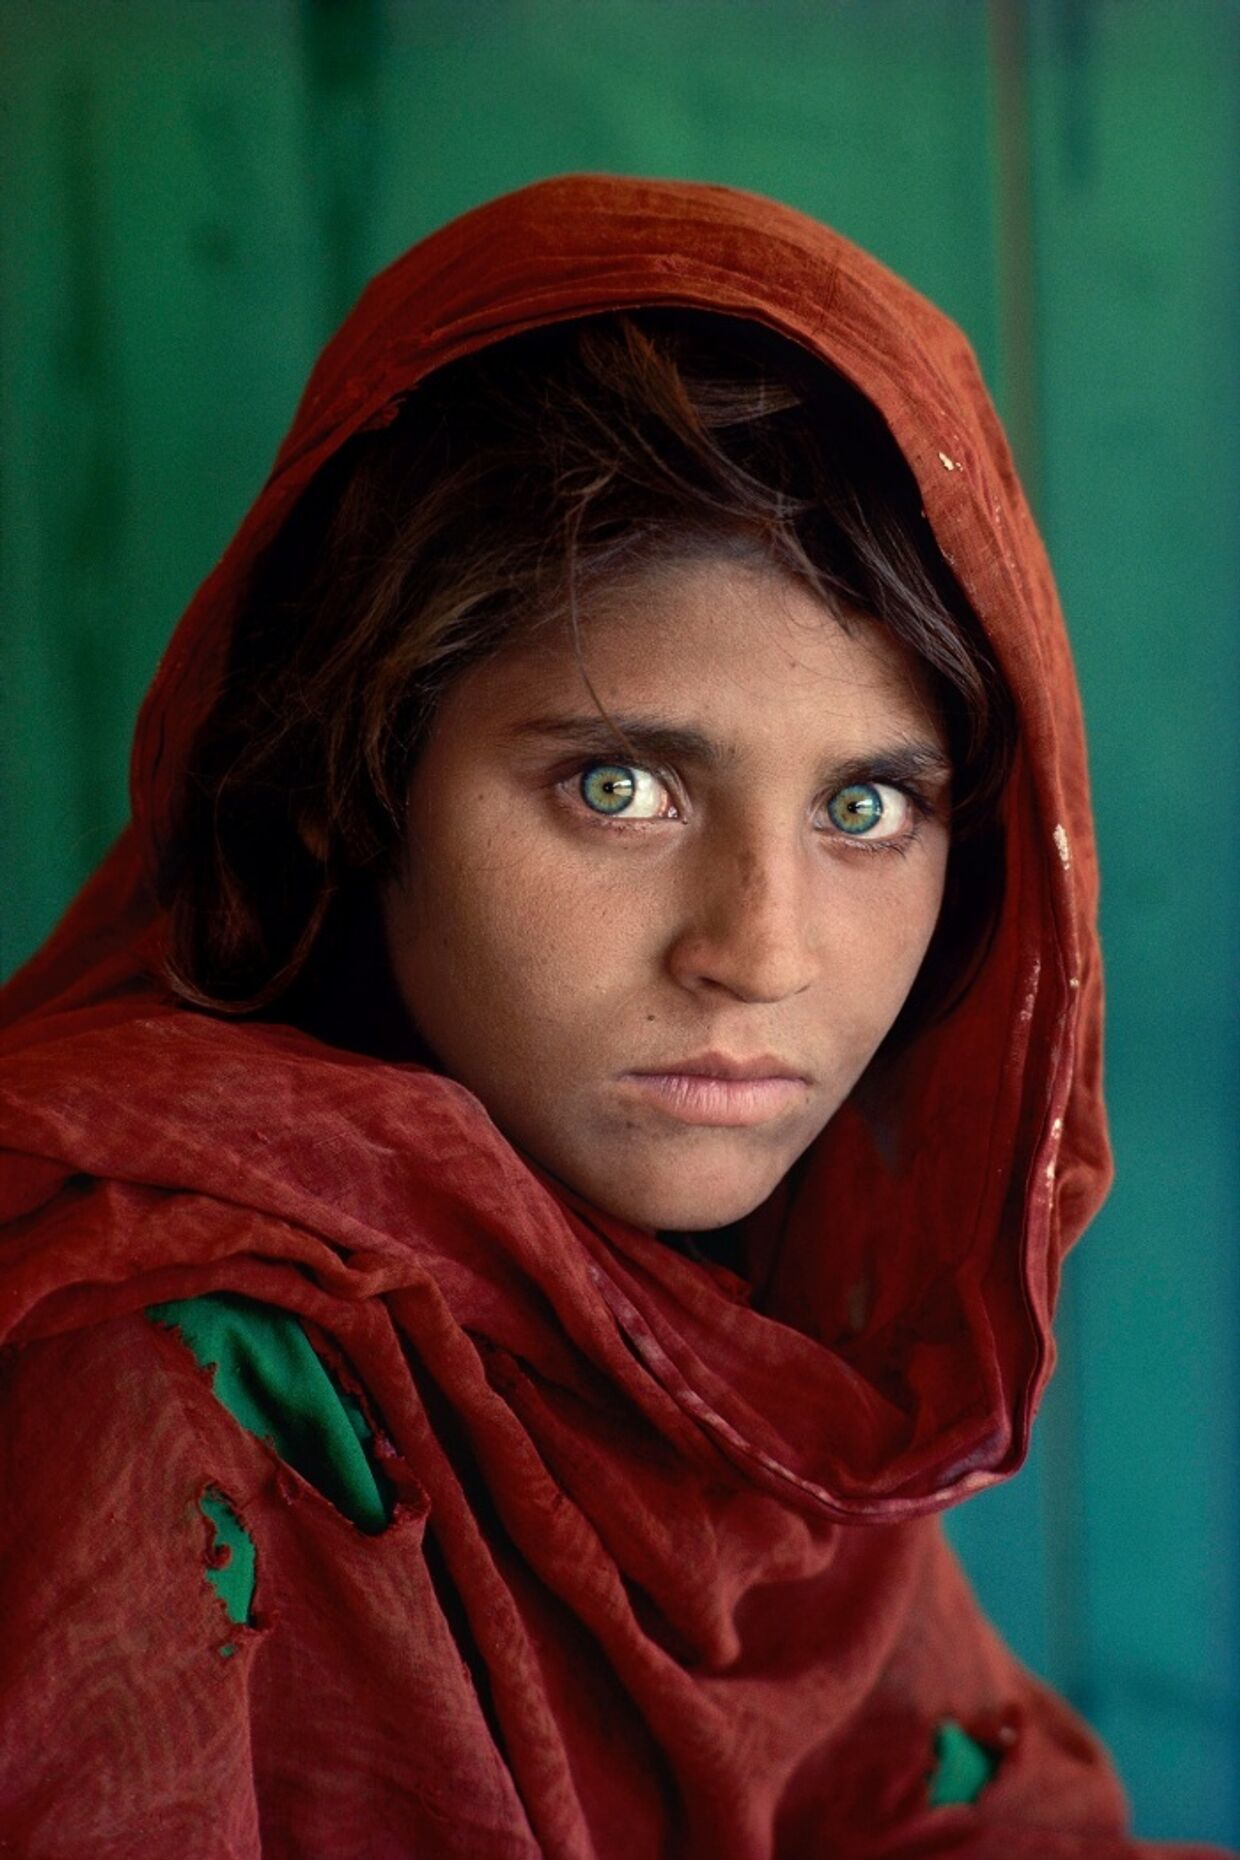 Стив Мак-Карри «Шарбат Гула, афганская девочка в лагере для беженцев Назир-Багх под Пешаваром, Пакистан», 1984 год